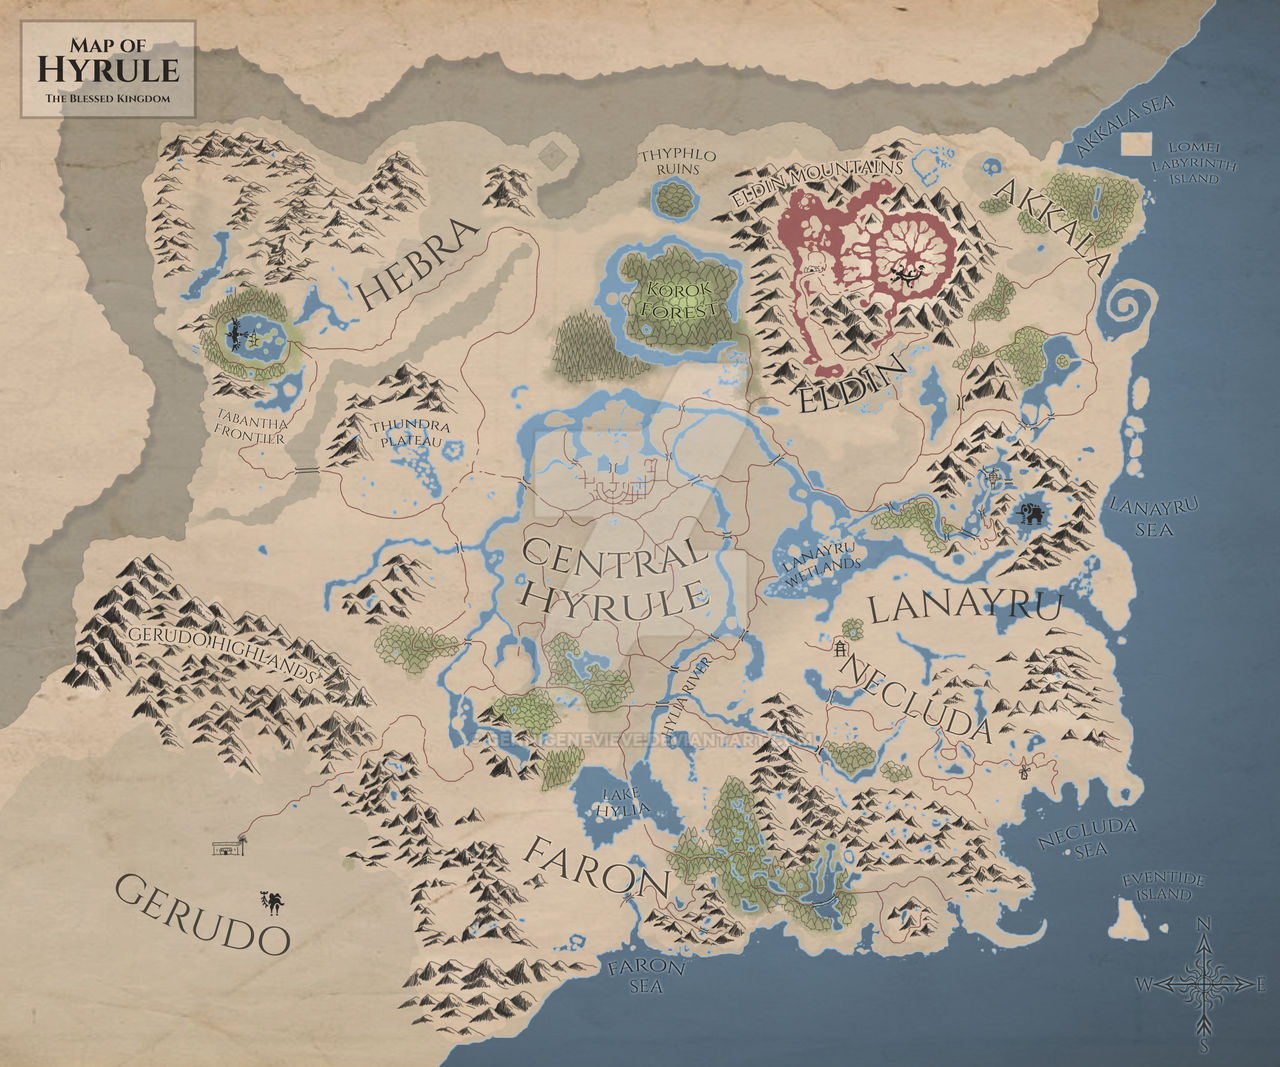 Zelda: Breath of the Wild Map